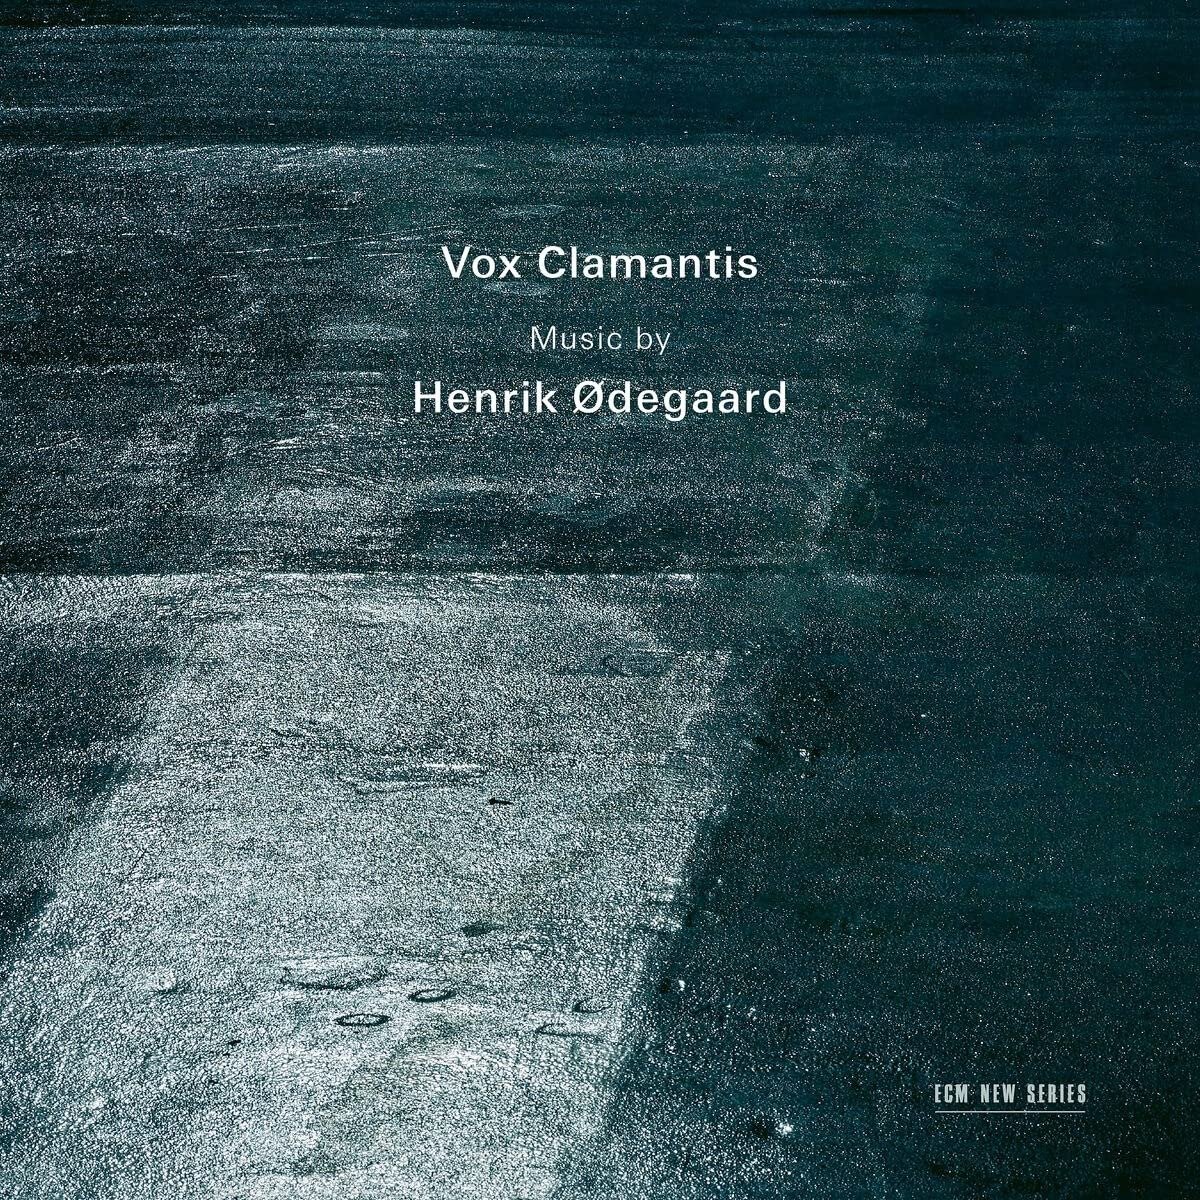 CD Shop - VOX CLAMANTIS HENRIK ODEGAARD